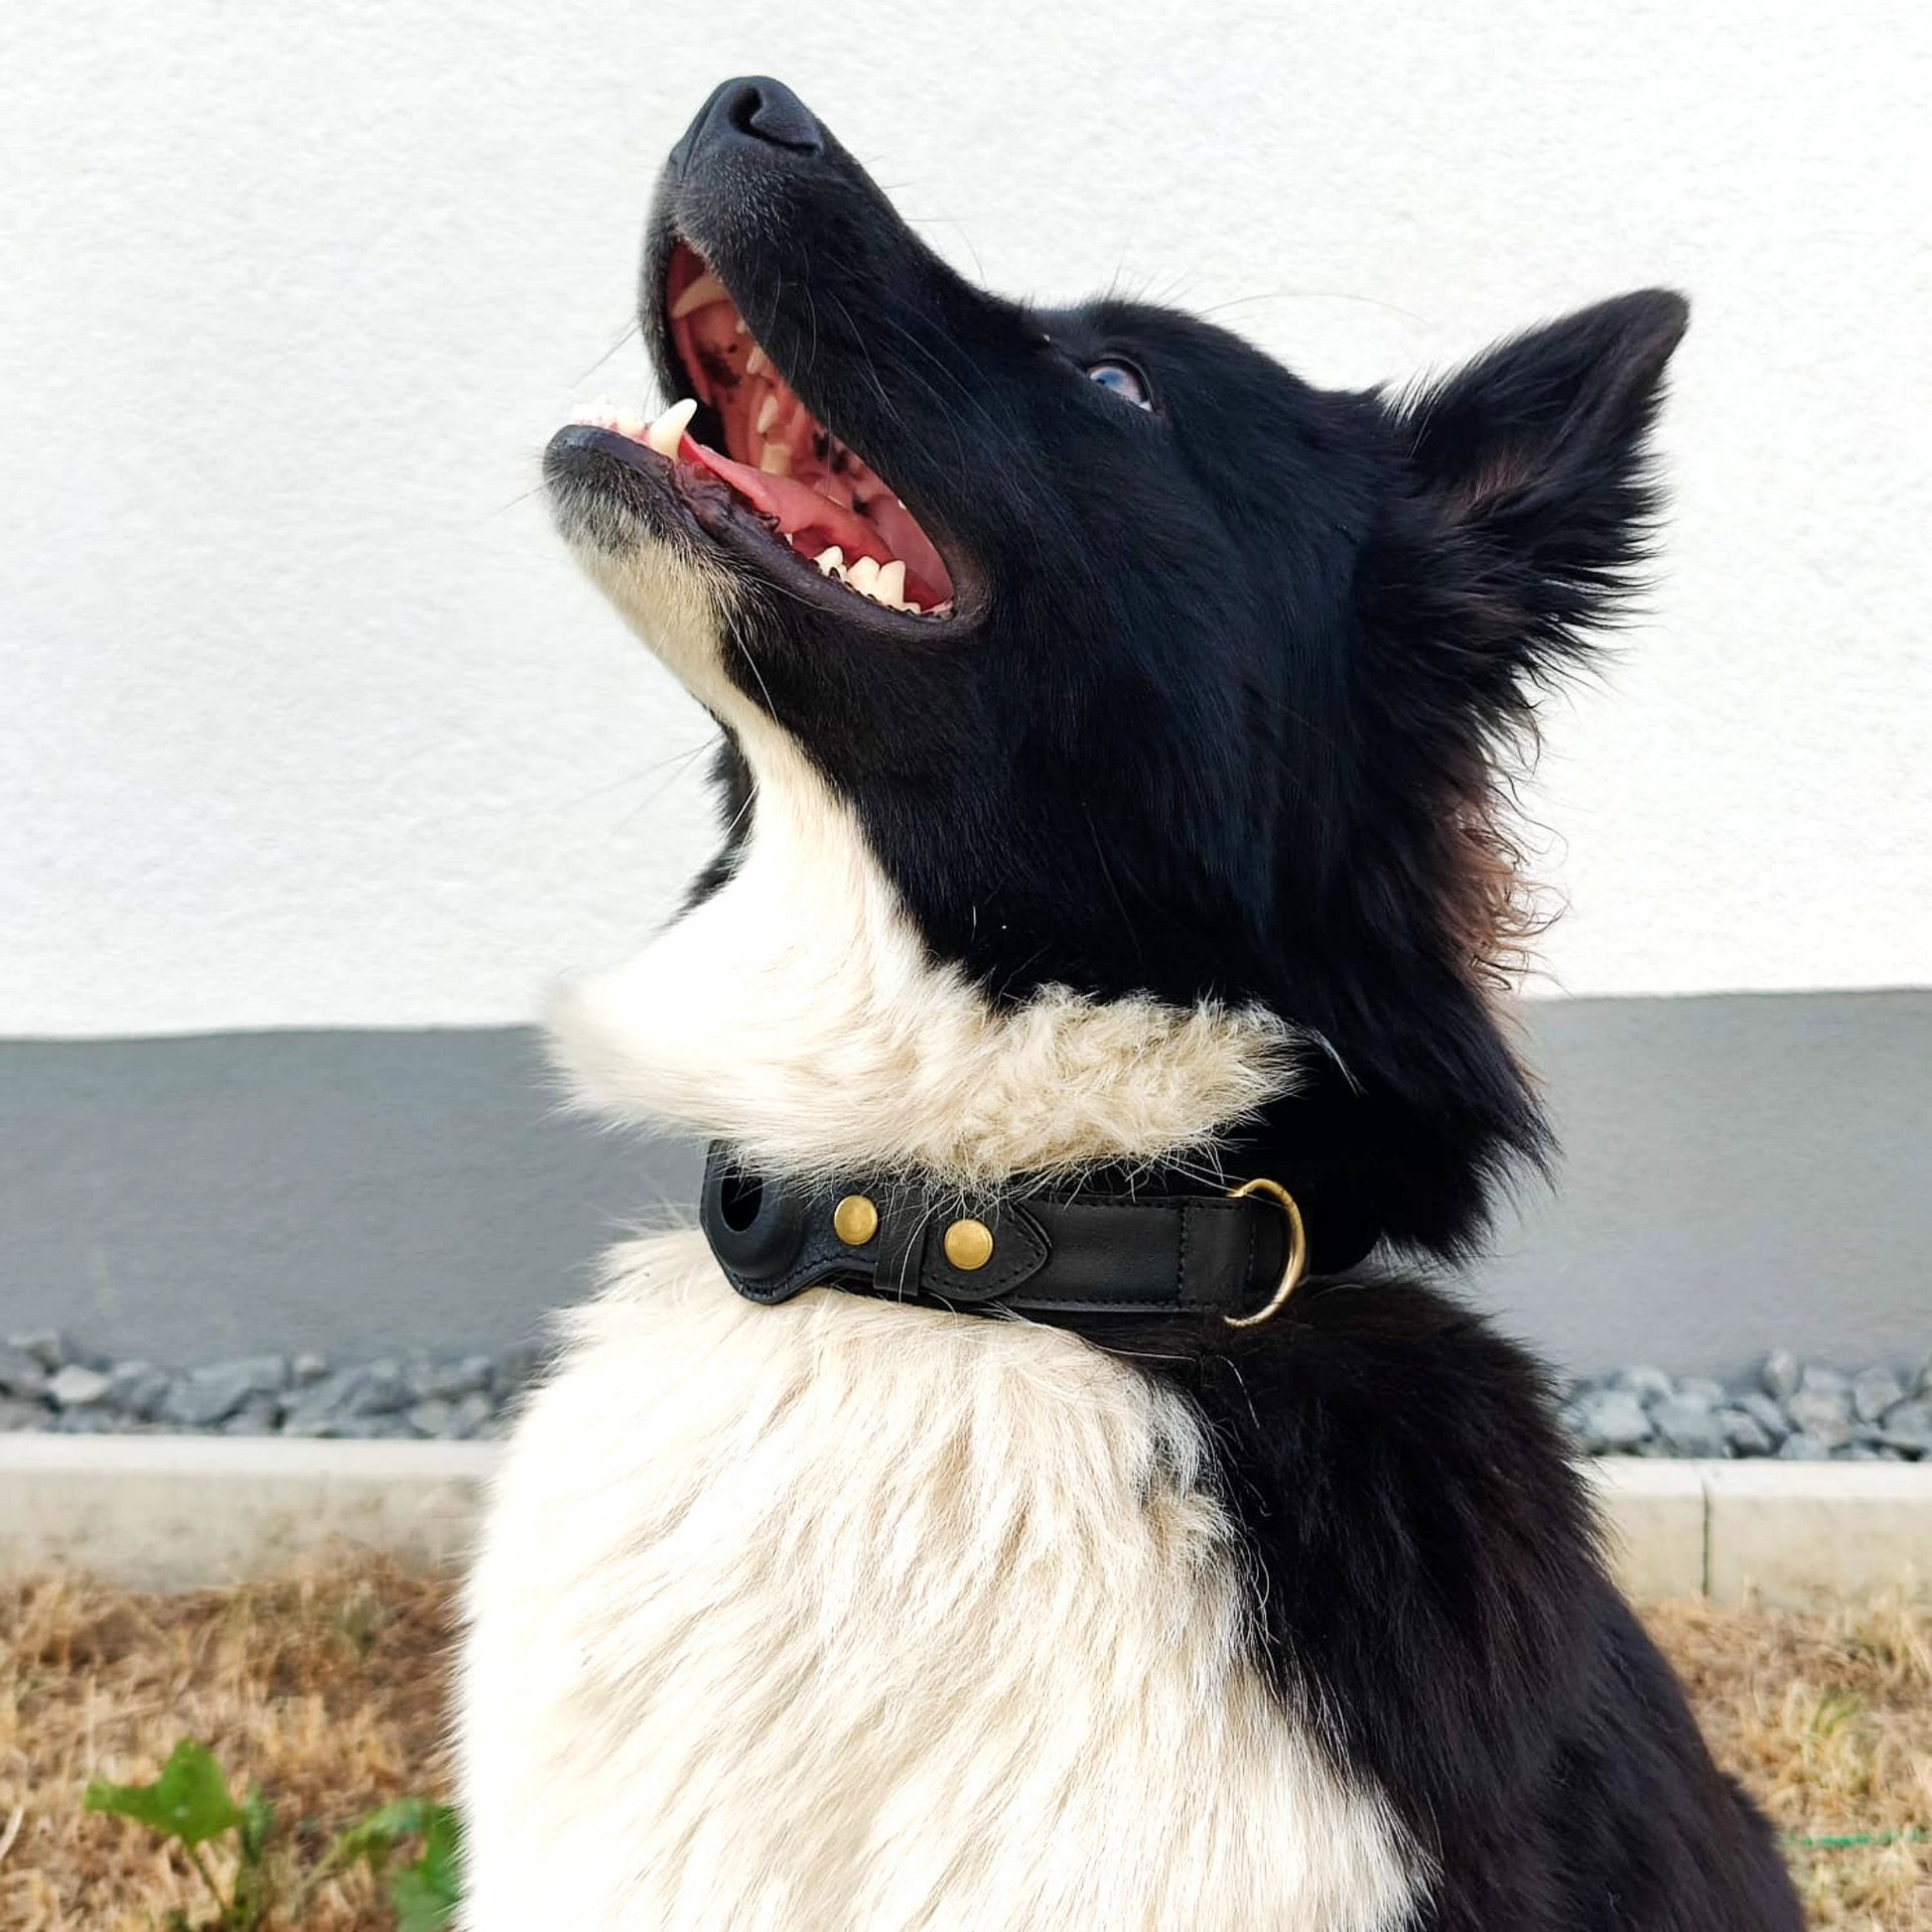 Harnais pour chien en cuir compatible avec Airtag 2021 Harnais pour animaux  de compagnie réglable avec porte-airtag et laisse pour chien